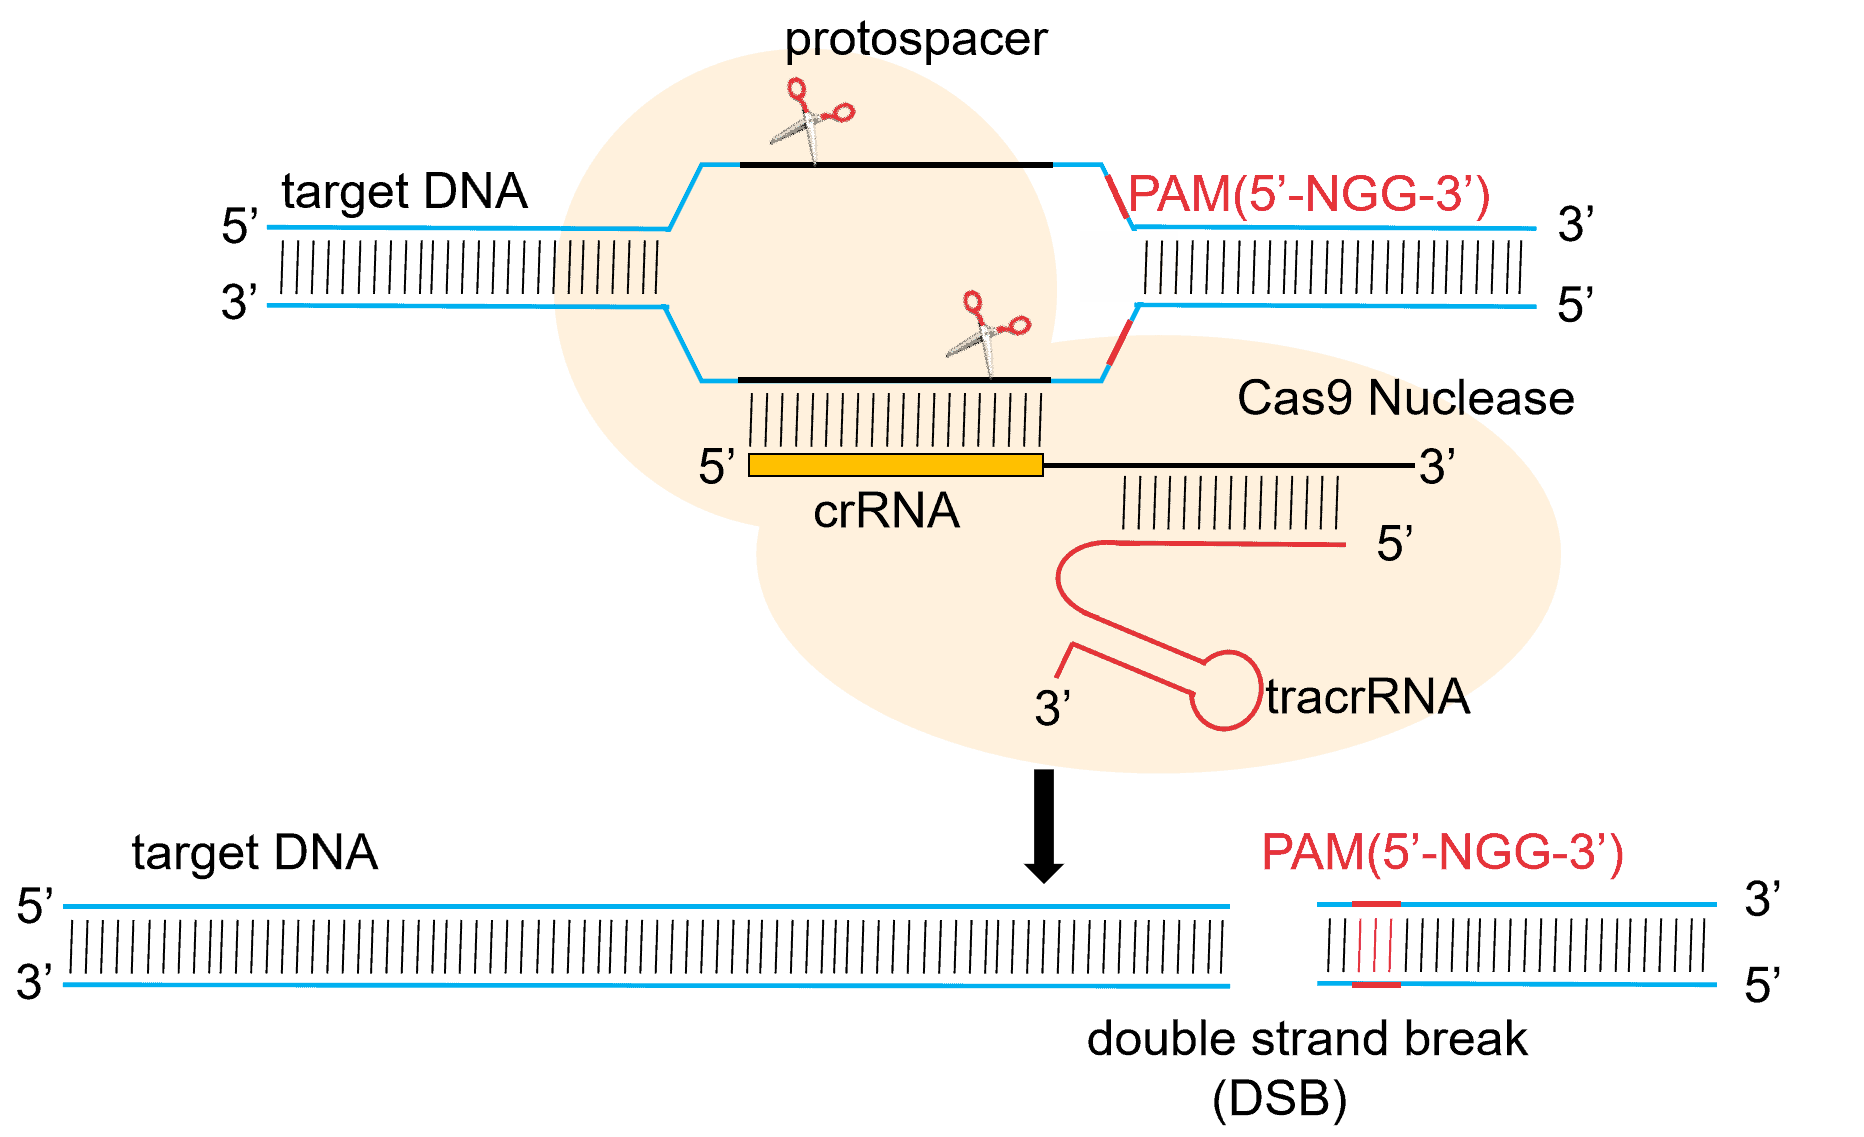 Characteristics and Applications of CRISPR/Cas9